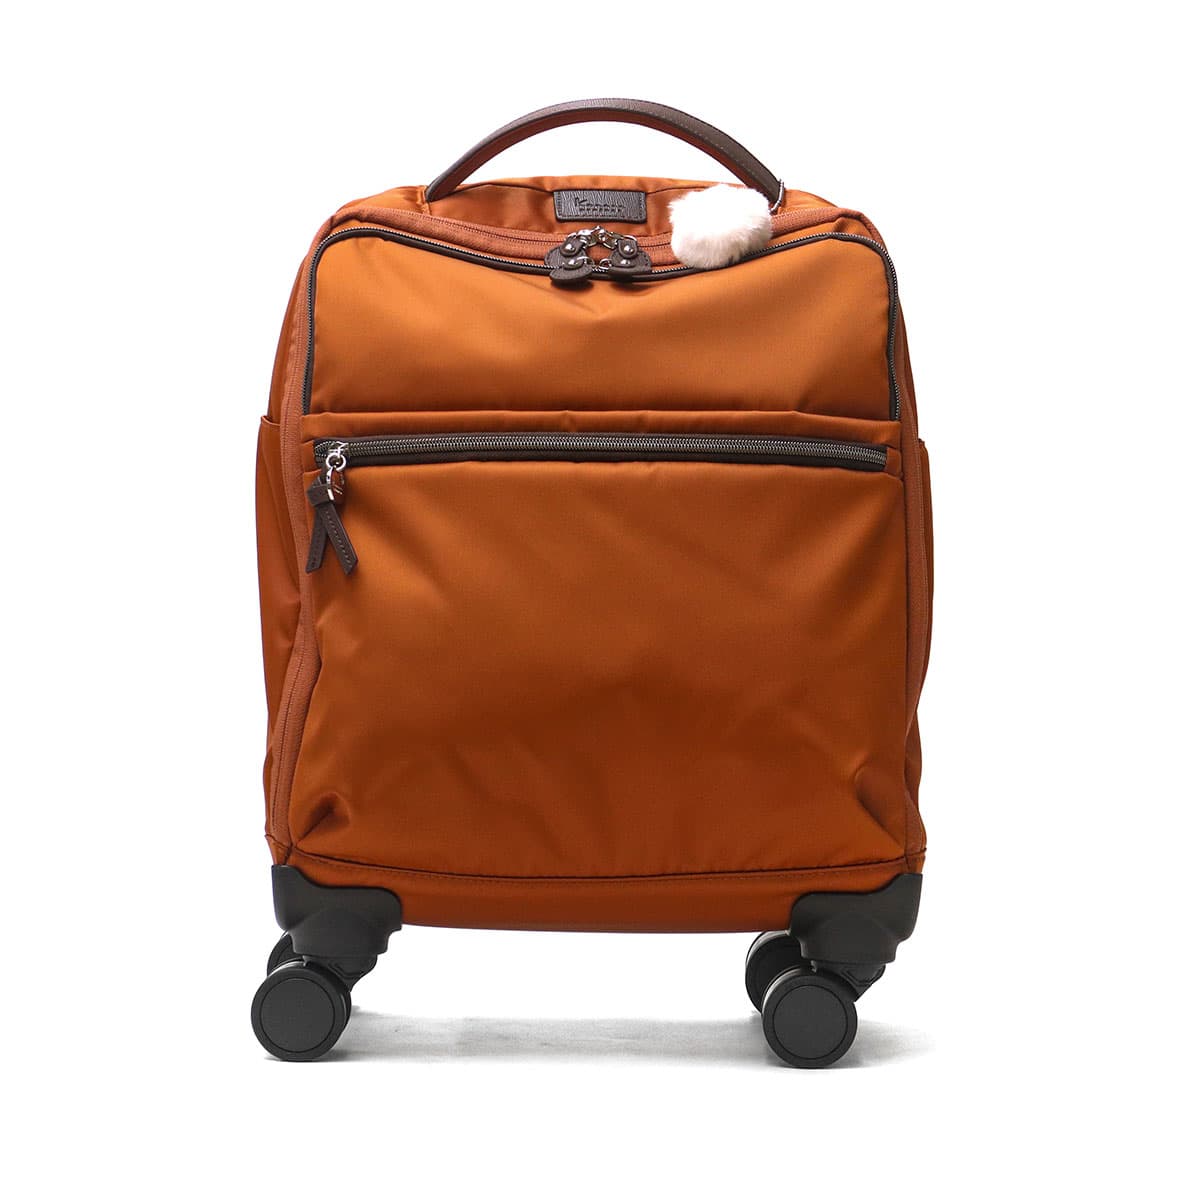 Kanana project カナナプロジェクト カナナマイトローリー 機内持ち込み対応スーツケース 24L 35512